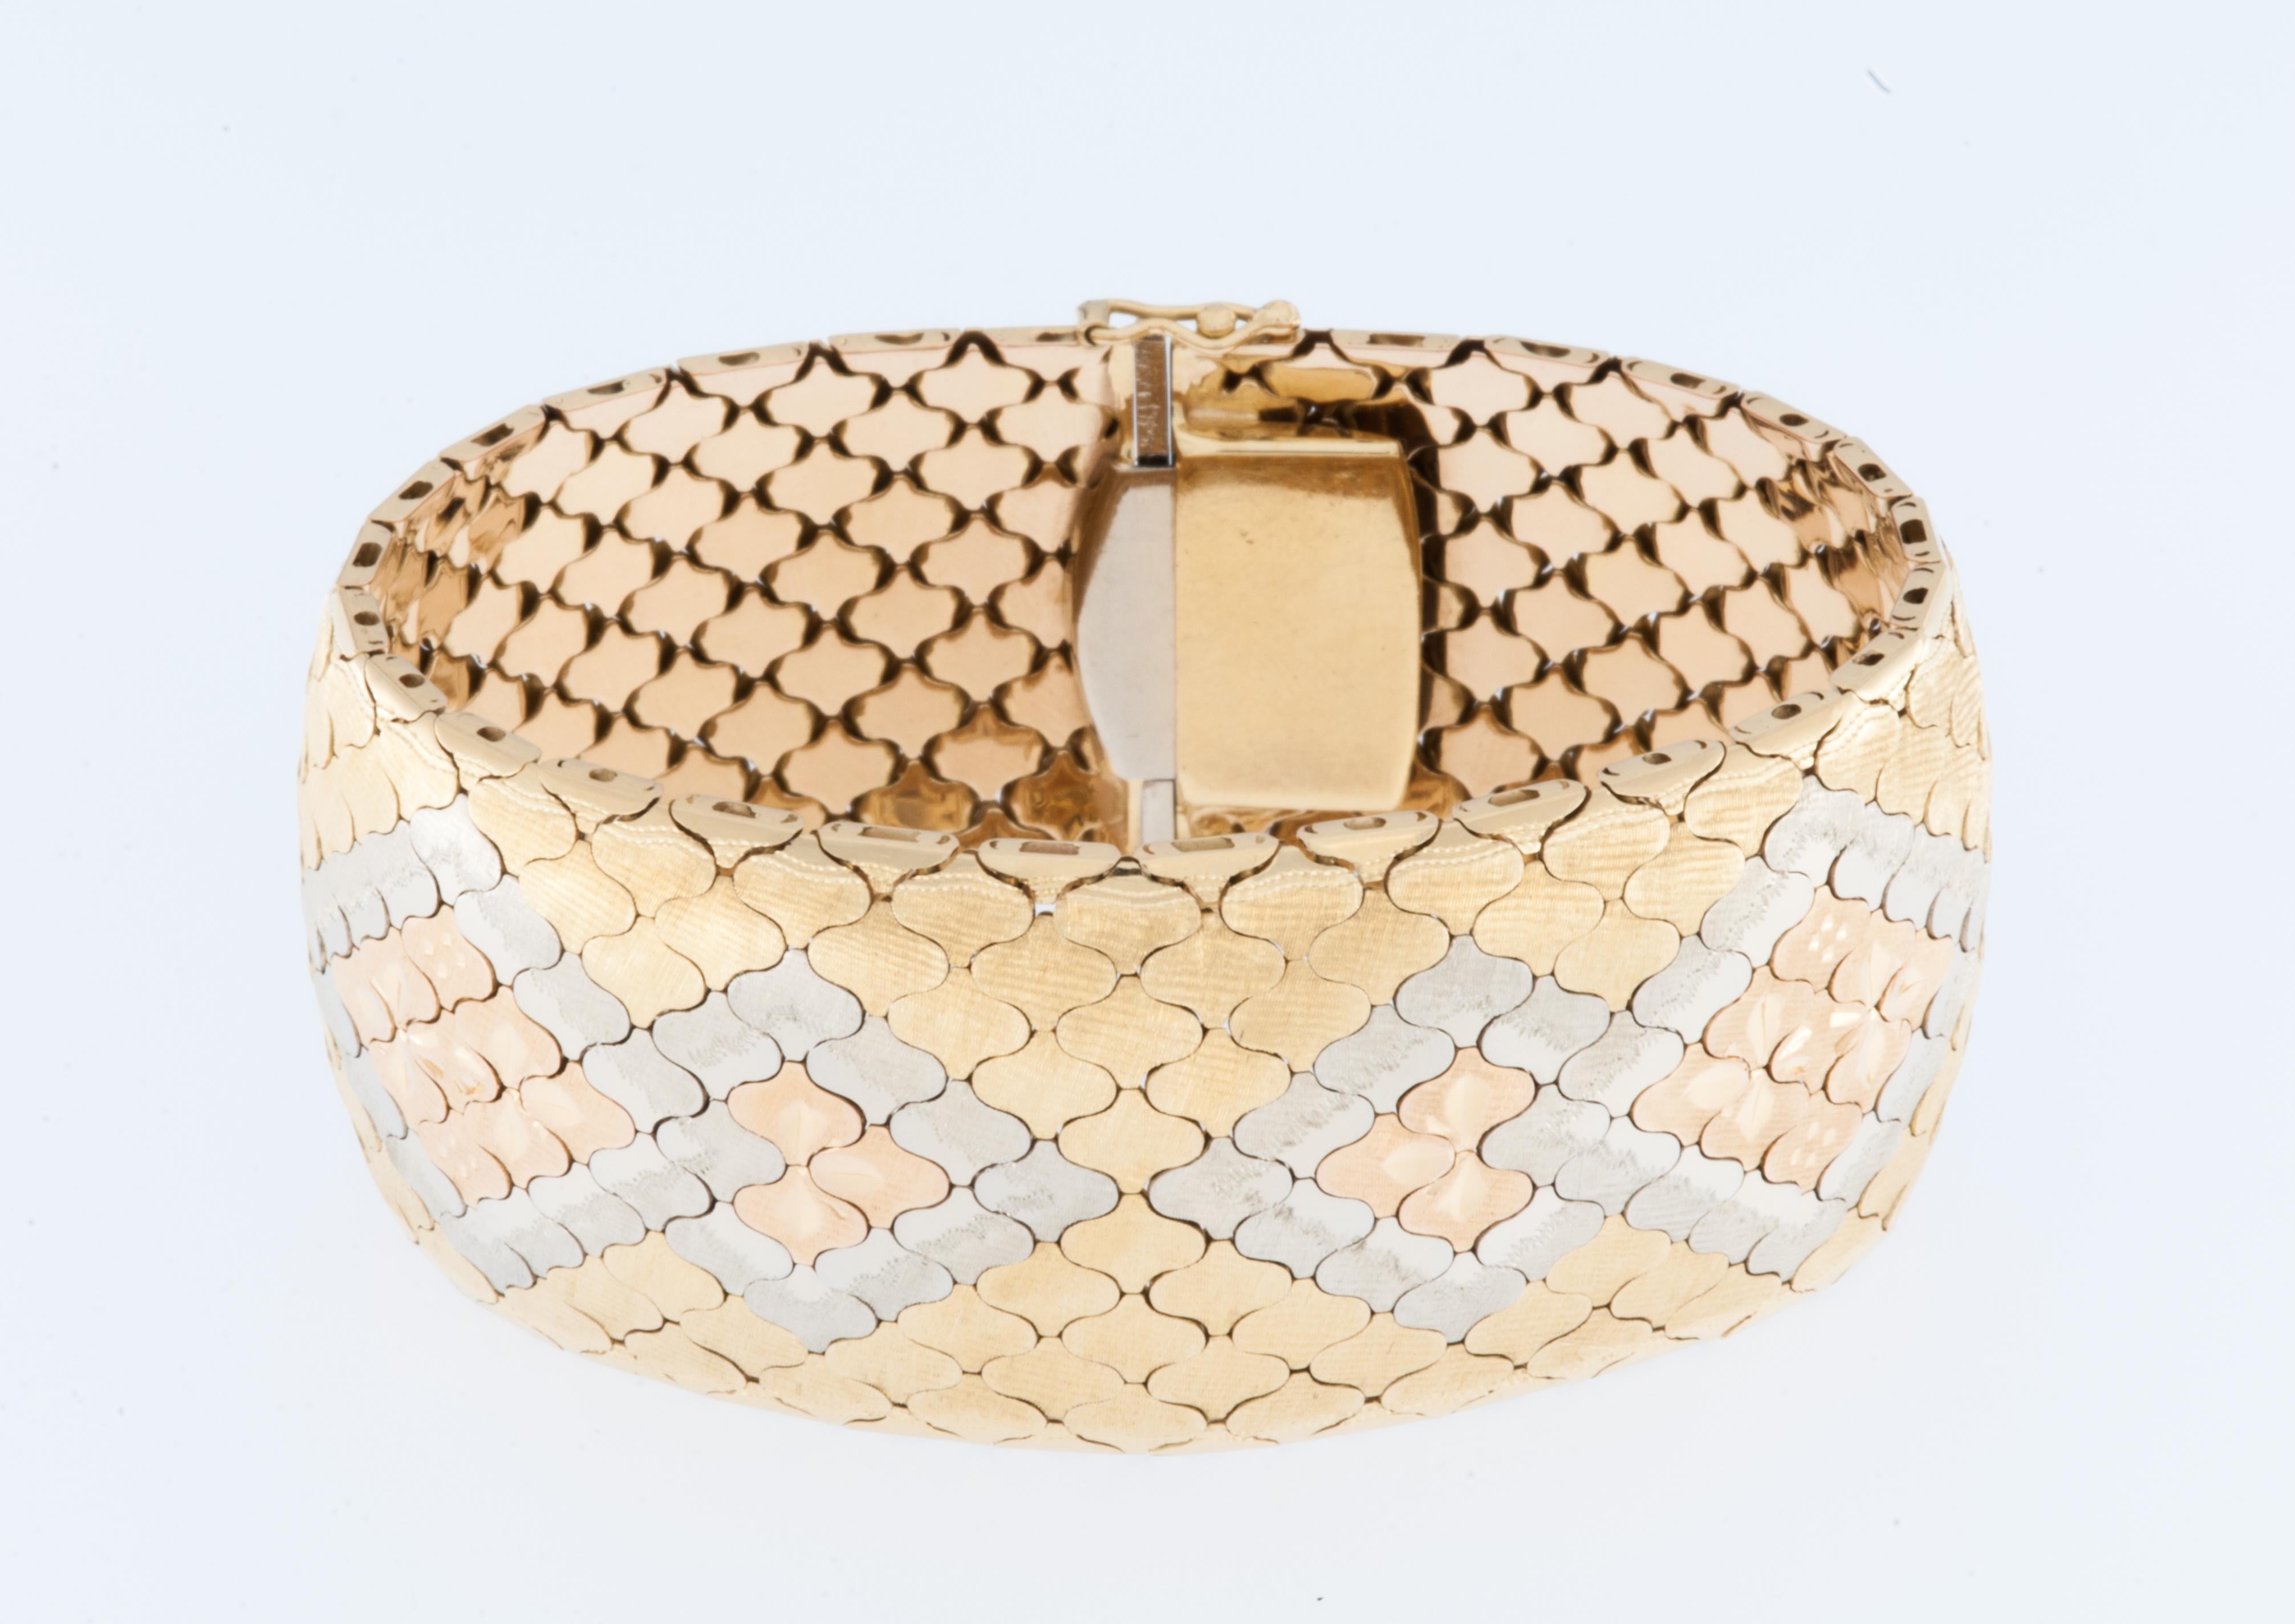 Das Art Deco Iconic Cuff-Bracelet ist ein atemberaubendes Stück, das mit Präzision und Eleganz gefertigt wurde. Diese Manschette aus 18 Karat Gelb-, Weiß- und Roségold strahlt Luxus und Raffinesse aus. Das Wabendesign sorgt für einen Hauch von